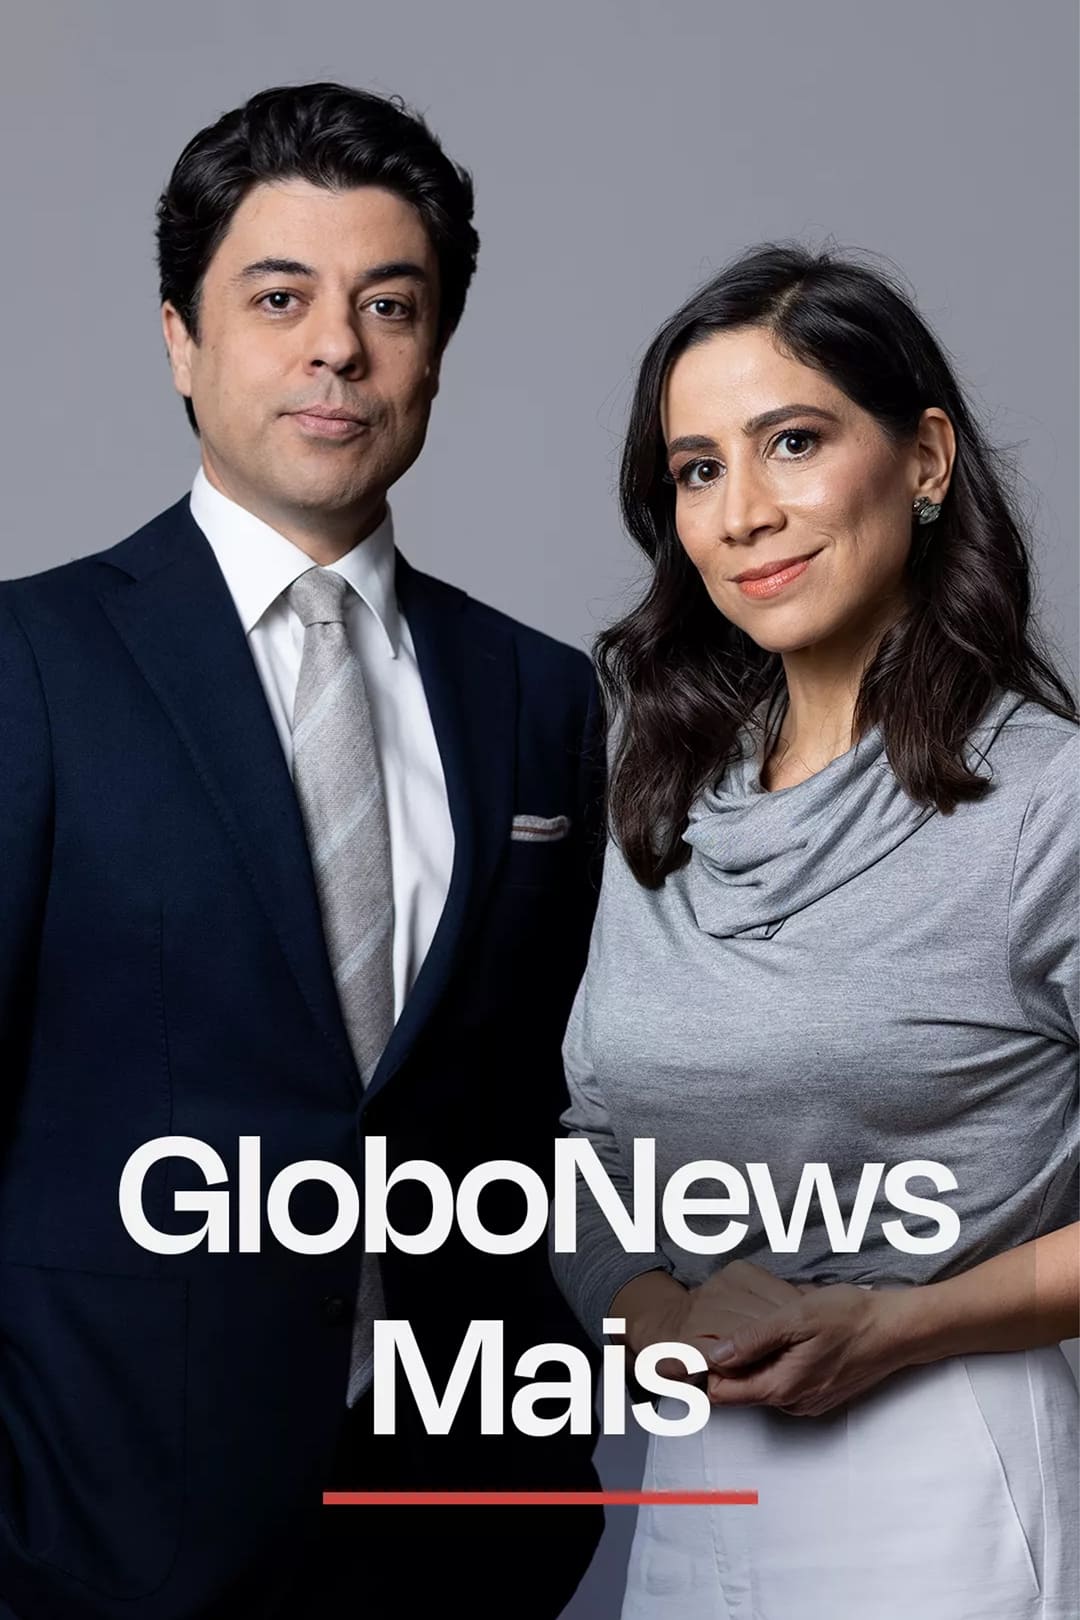 Globonews Mais